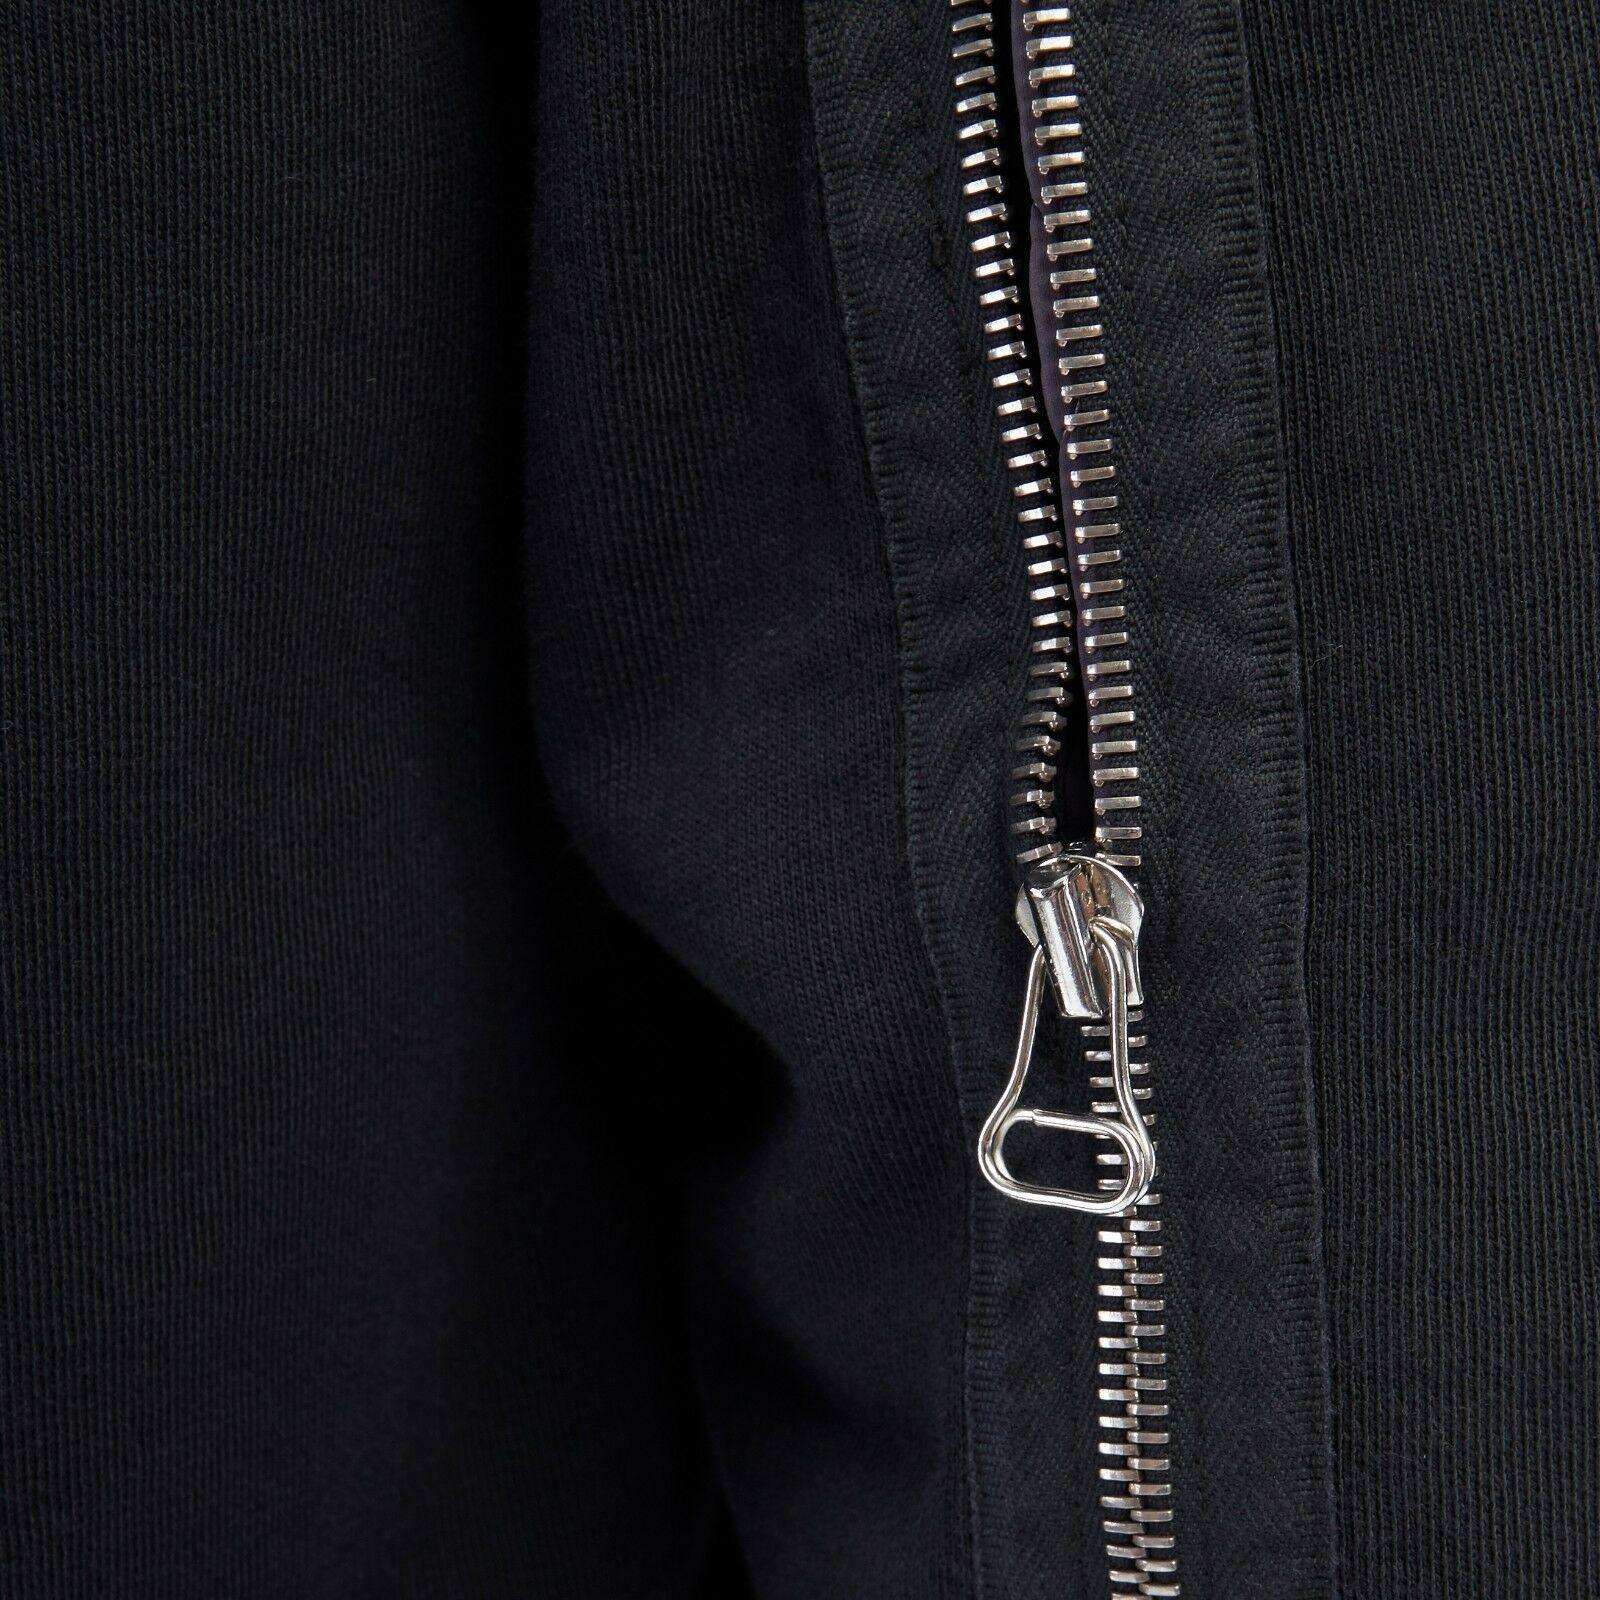 Men's DRIES VAN NOTEN  black cotton zip back quilted lining sweater pullover top L